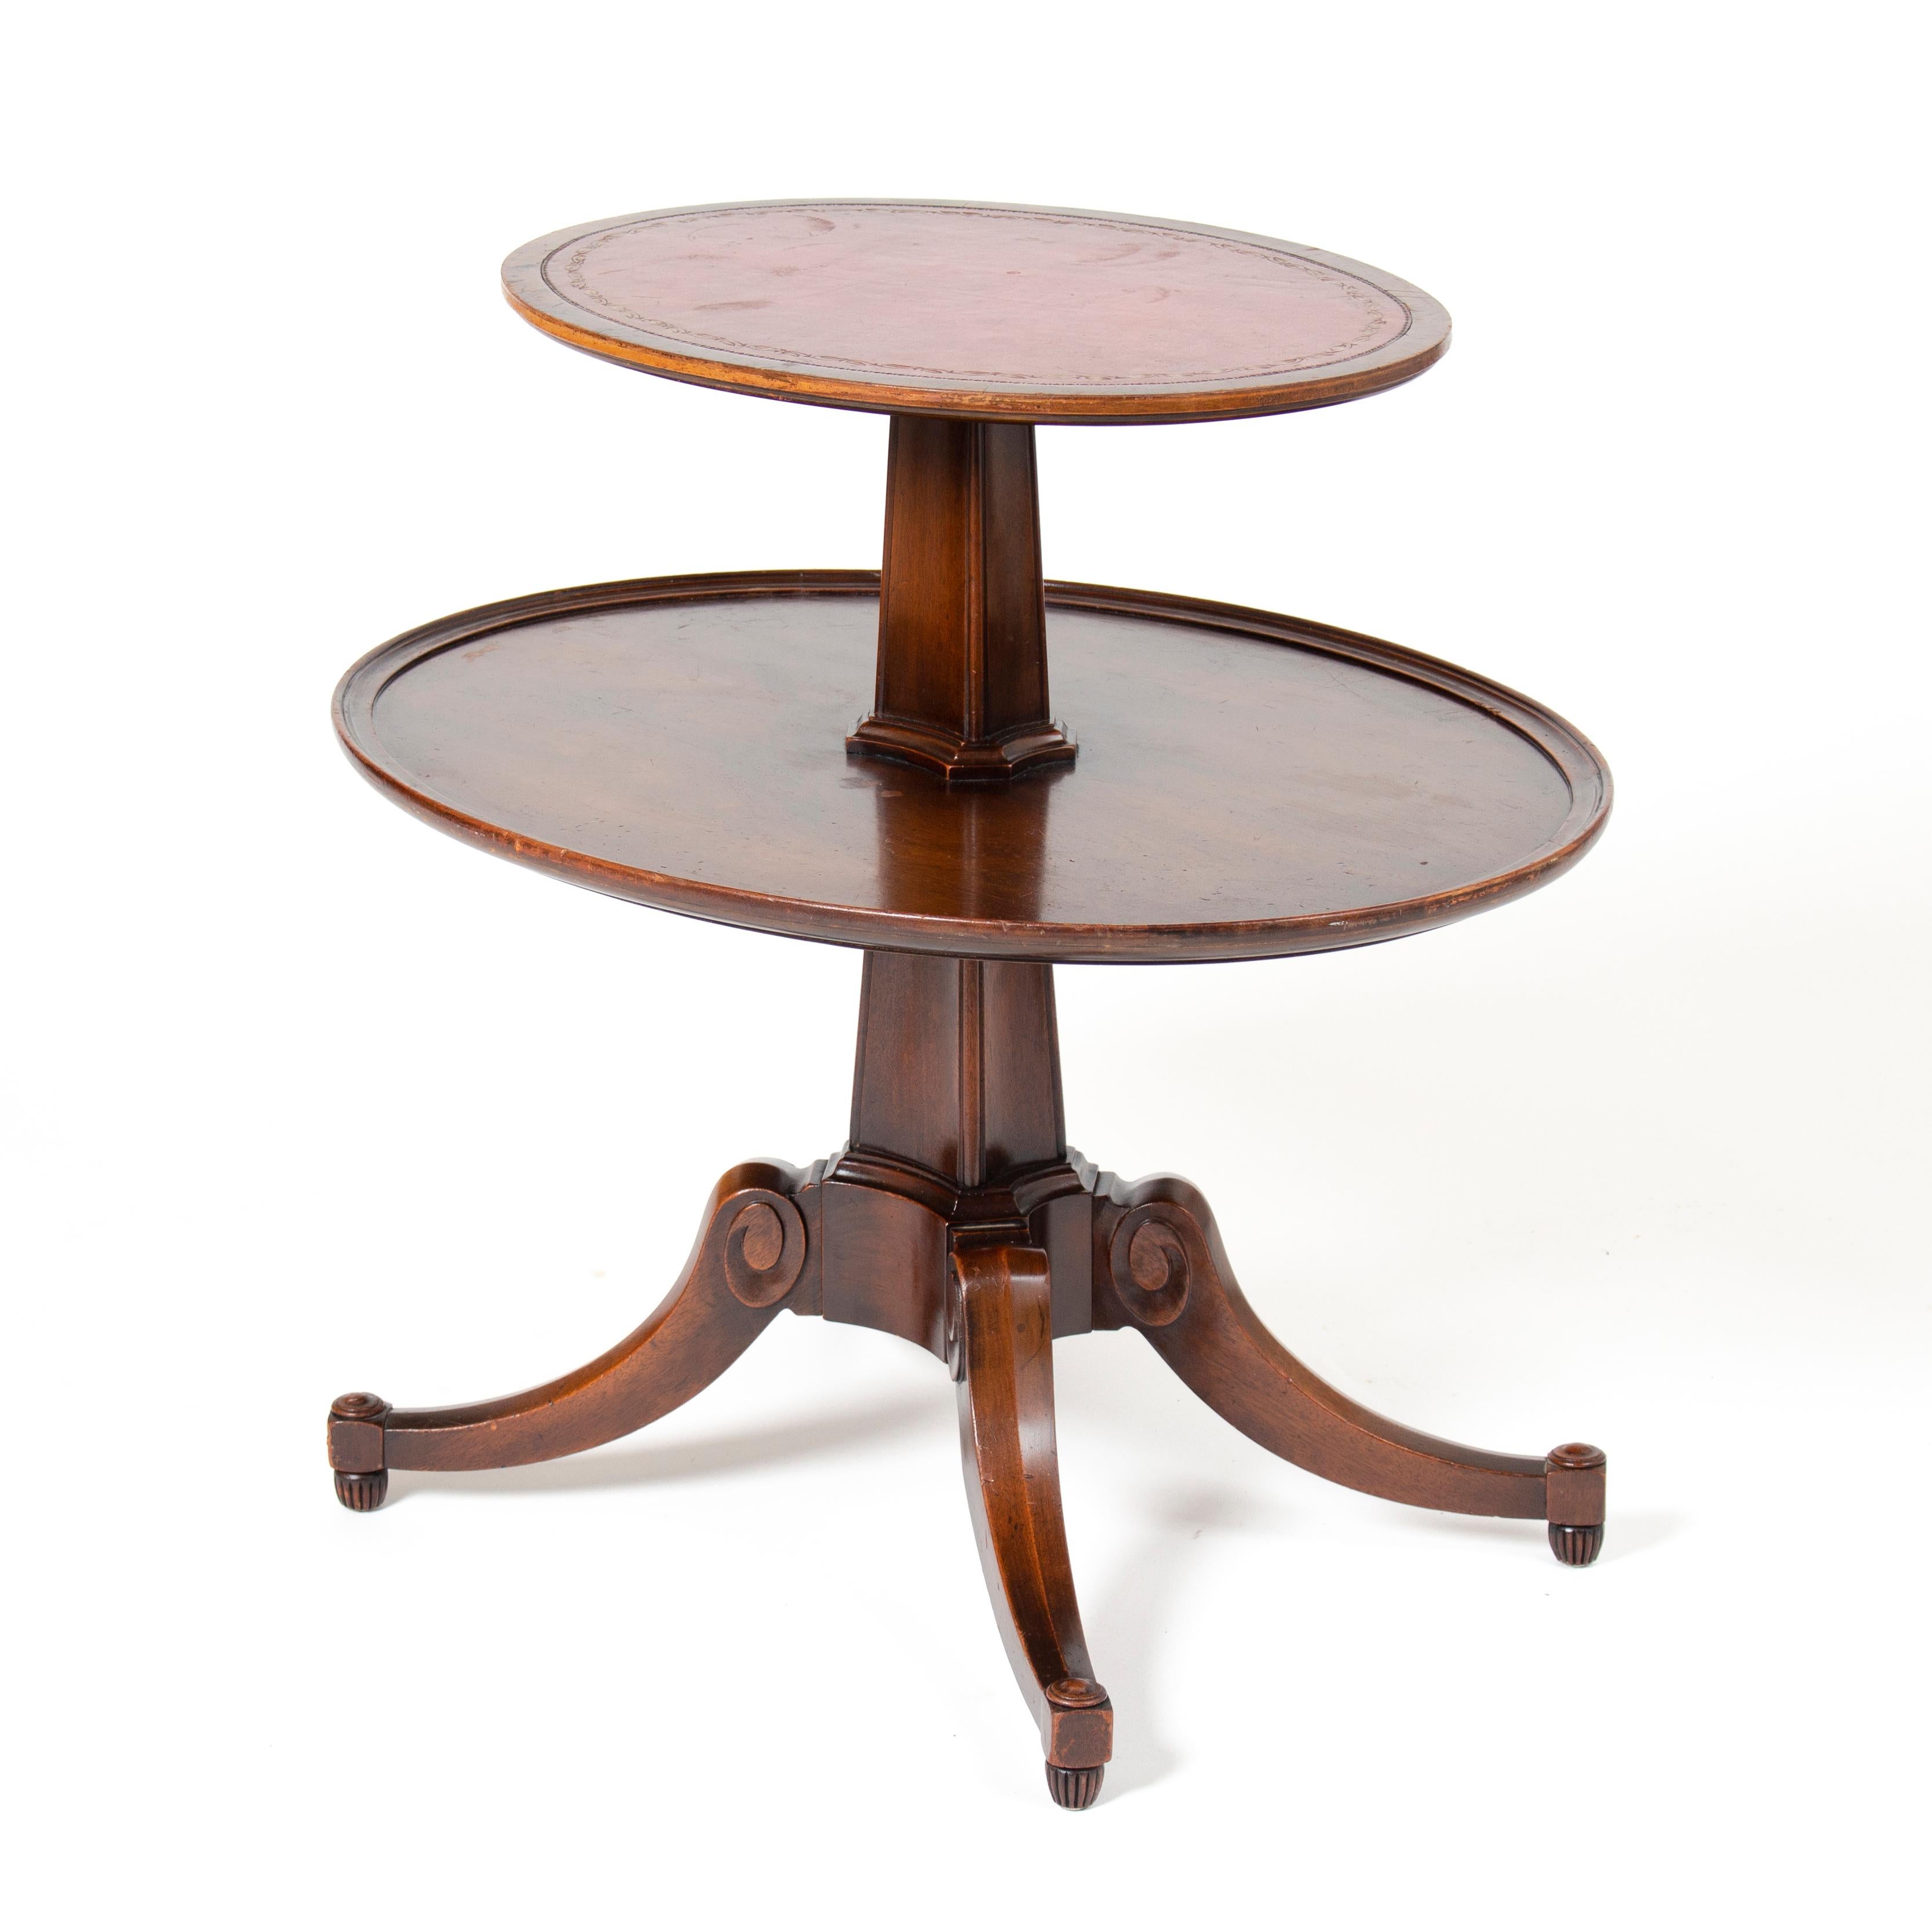 Die um 1880 hergestellten mehrstöckigen Tische konnten je nach Art des Tisches und des Aufstellungsortes für verschiedene Zwecke verwendet werden. Hier sind einige mögliche Verwendungszwecke:

Dekoration: Mehrstöckige Tische wurden oft als